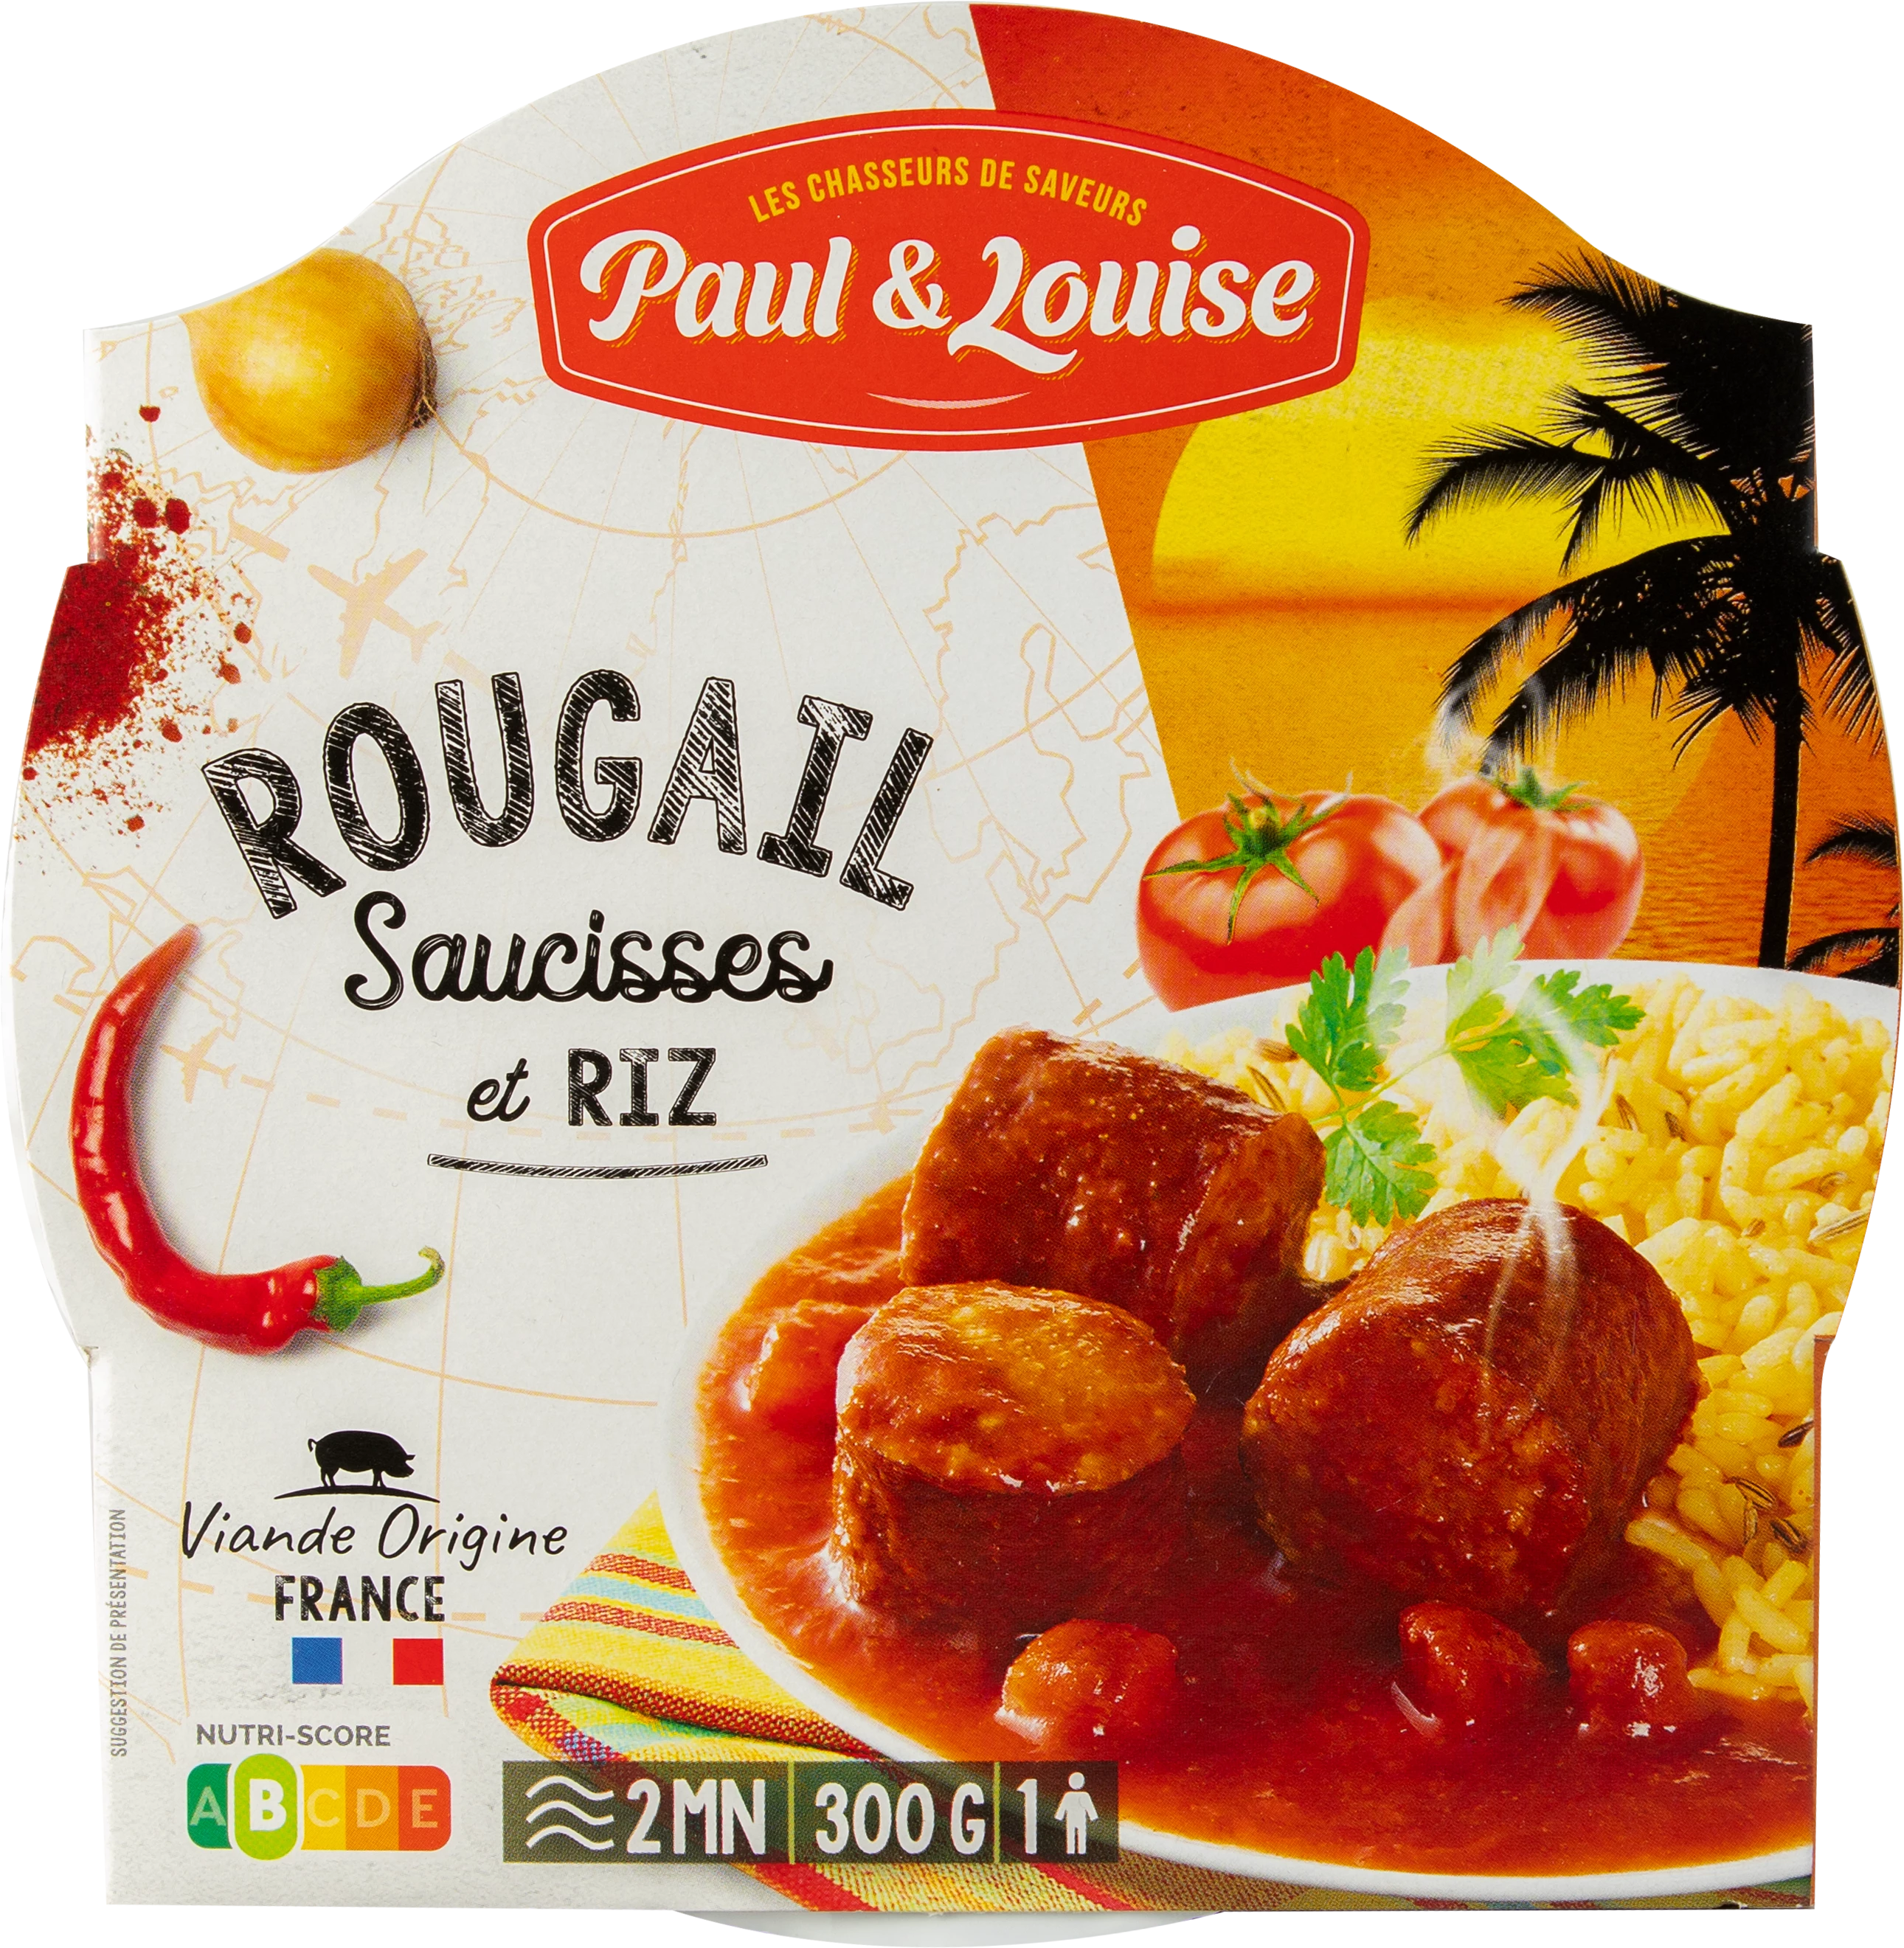 Cơm Xúc Xích Rougail, 300g - PAUL & LOUISE